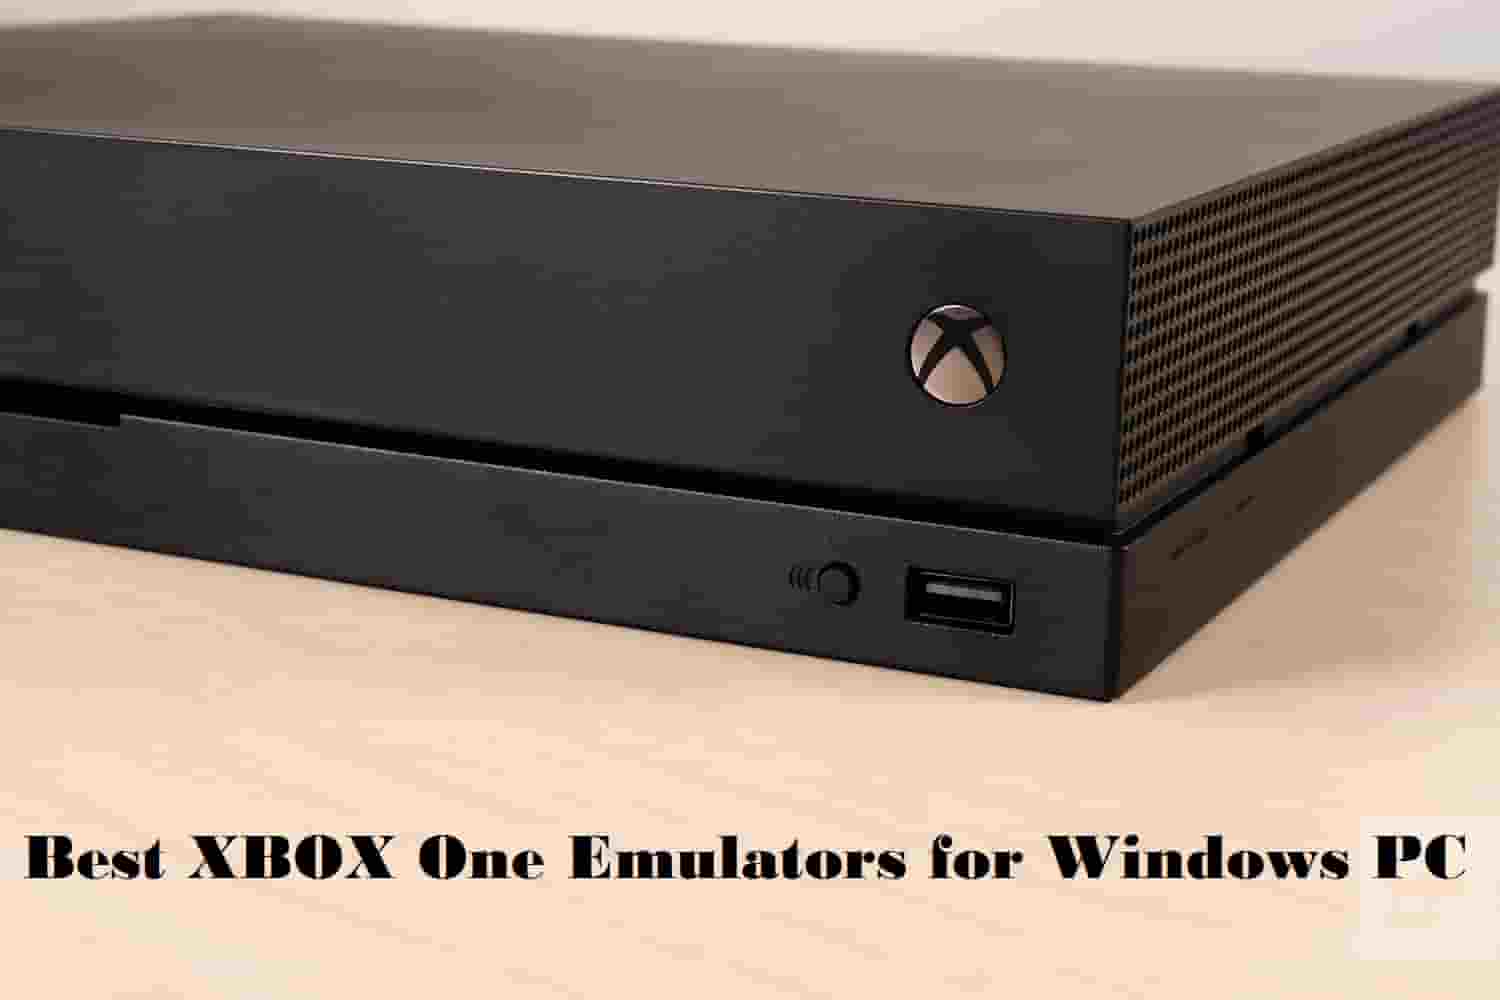 xeon xbox emulator 2 controllers